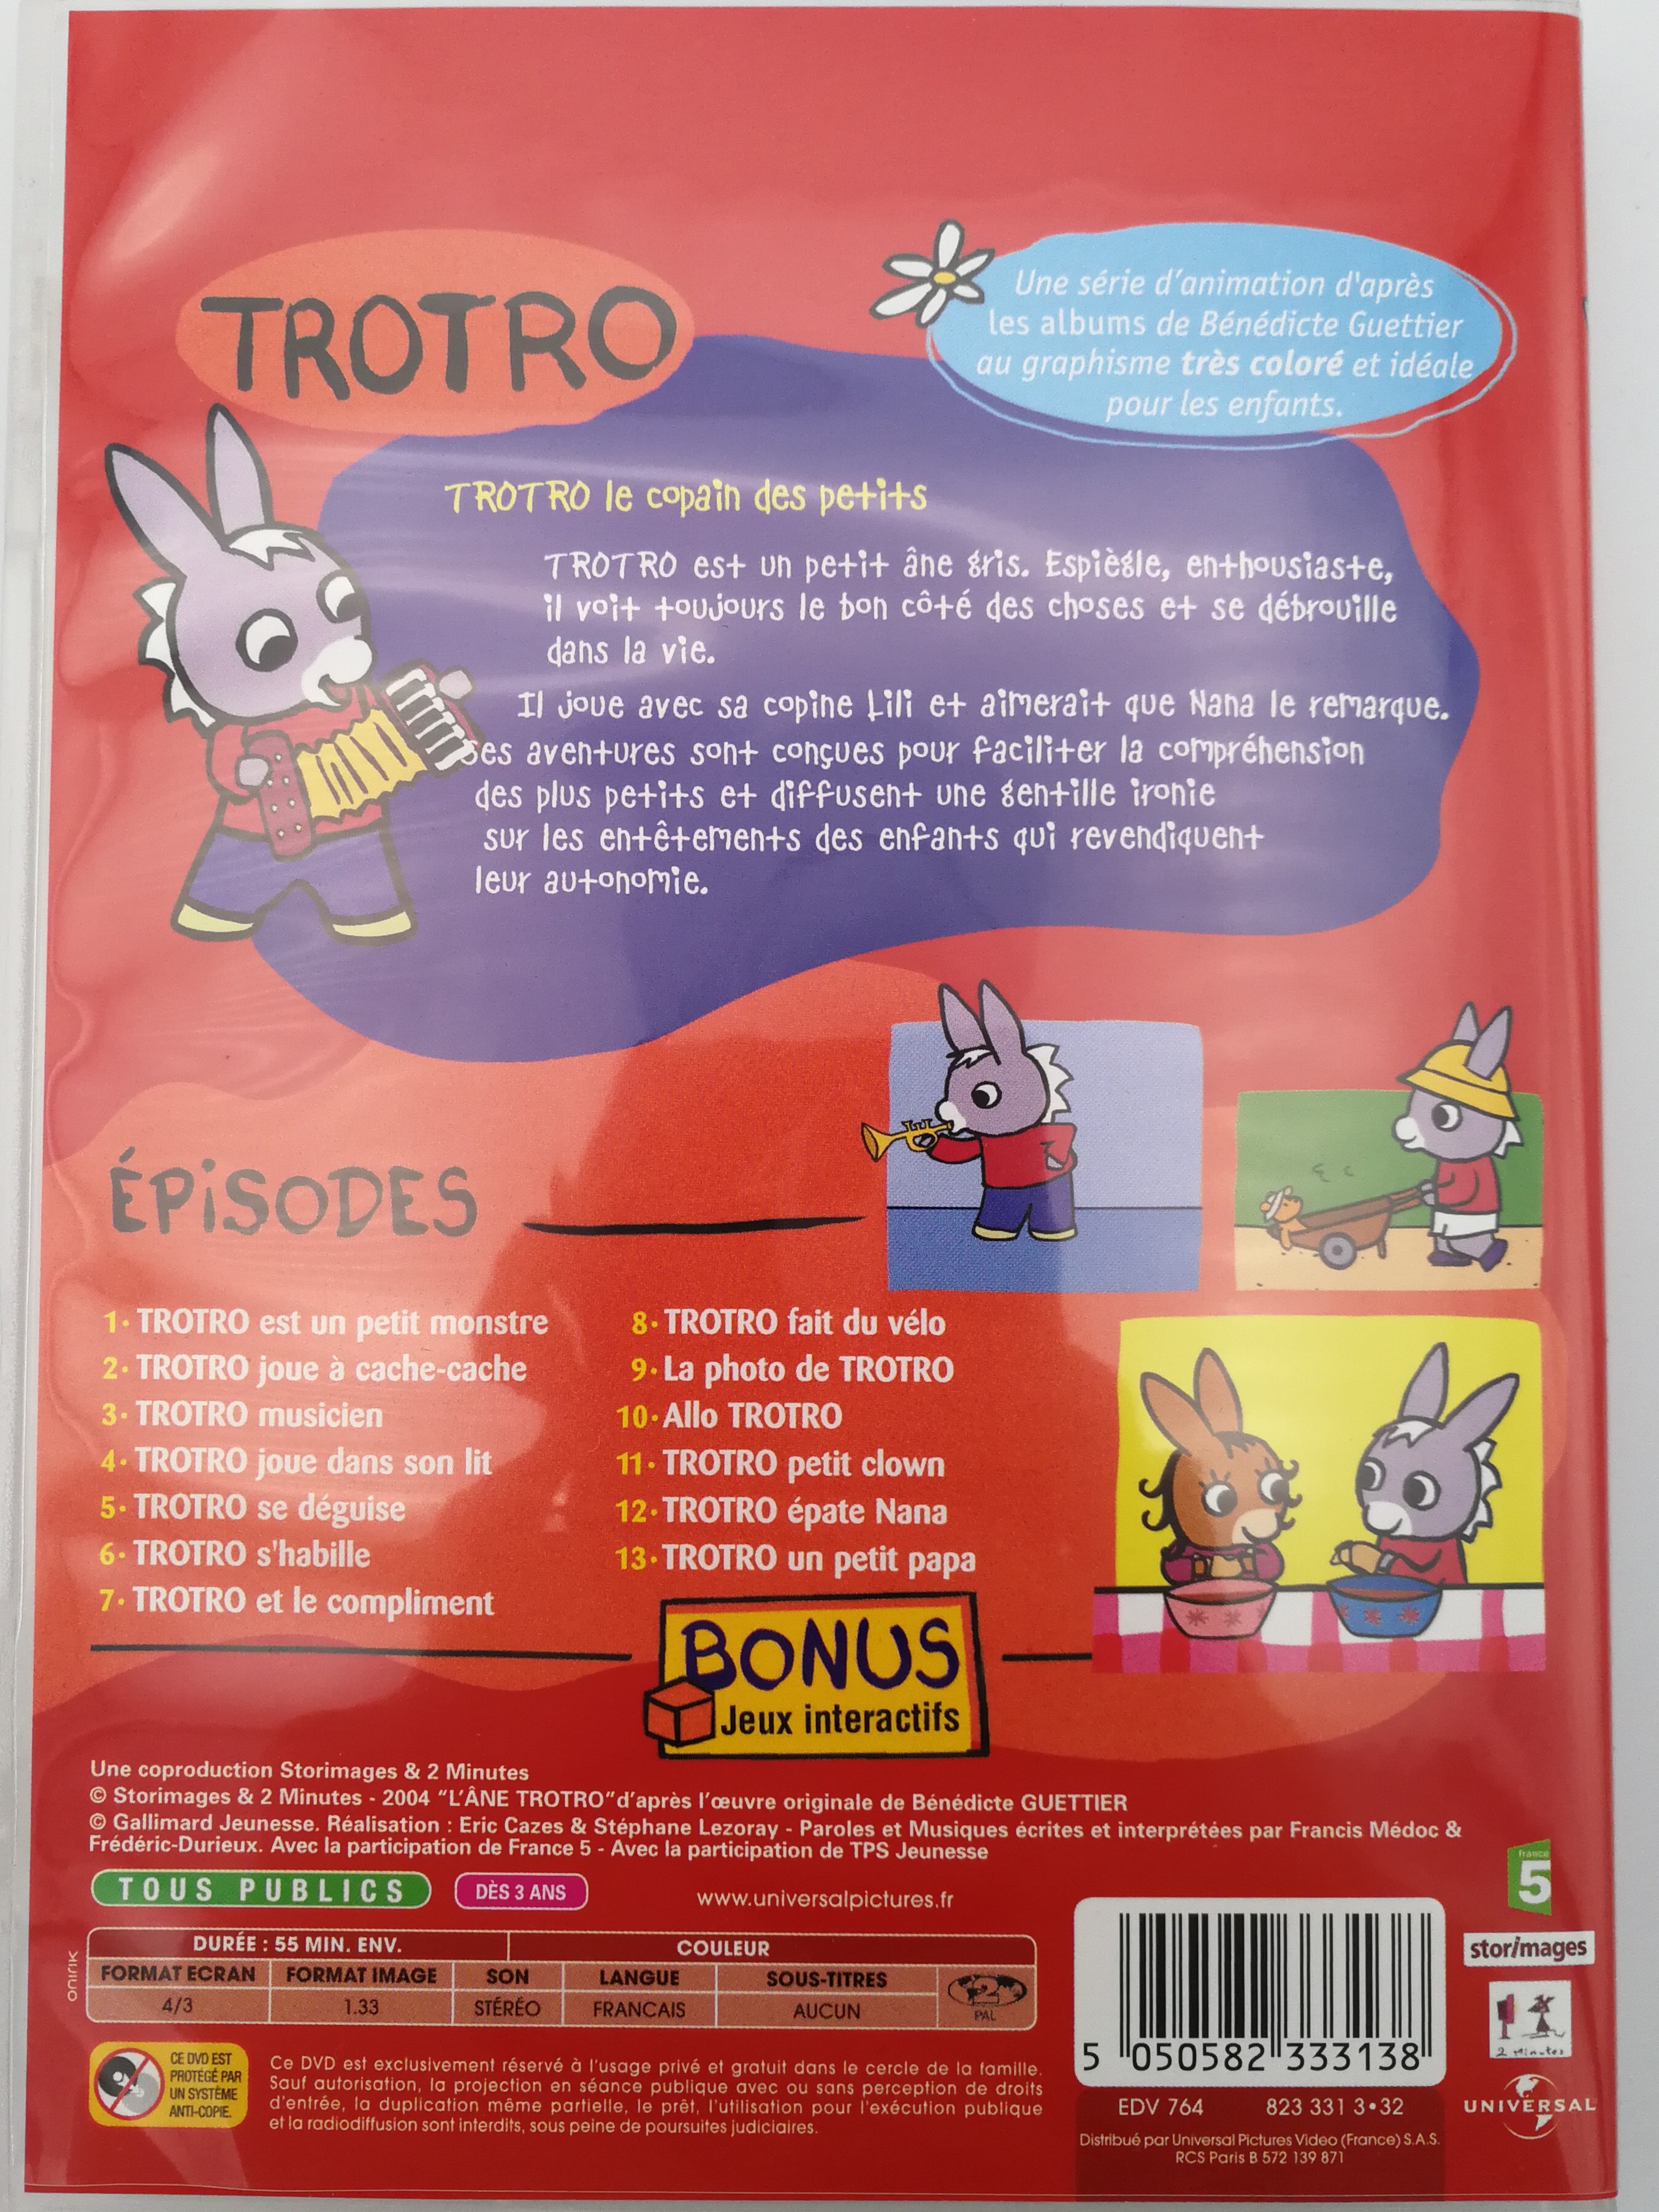 trotro-est-rigolo-dvd-2004-2.jpg